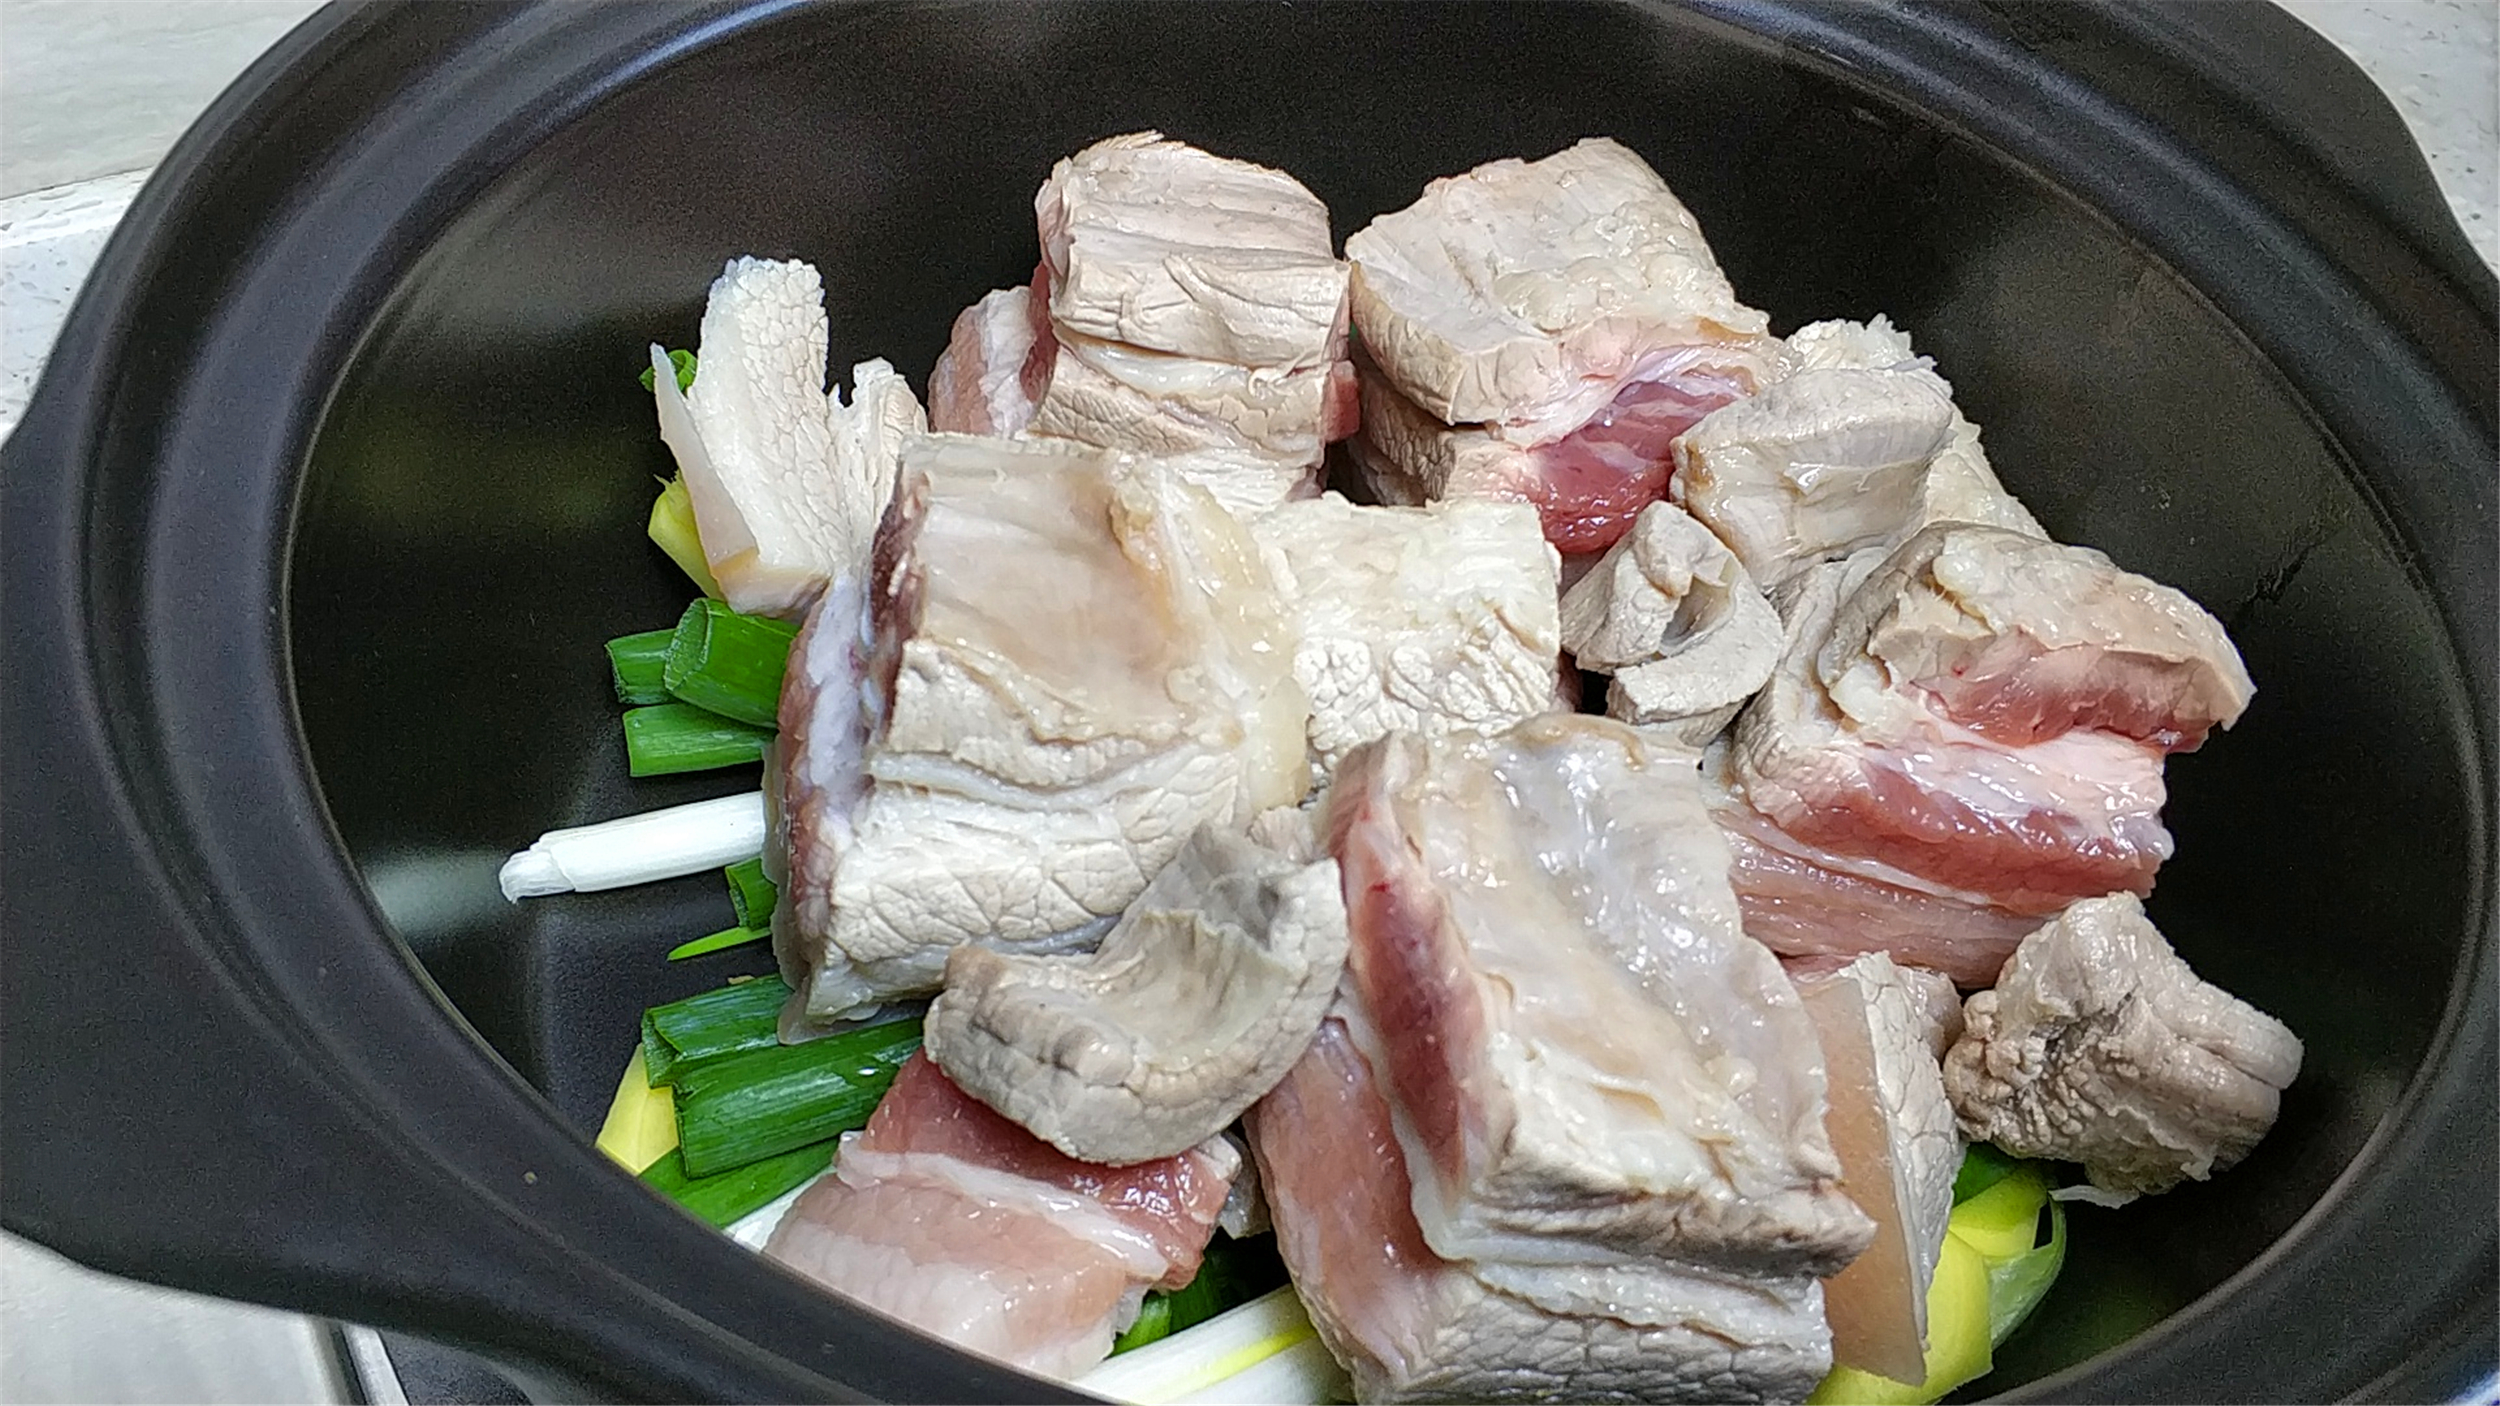 铁锅炖肉怎么做,铁锅炖肉怎么做好吃